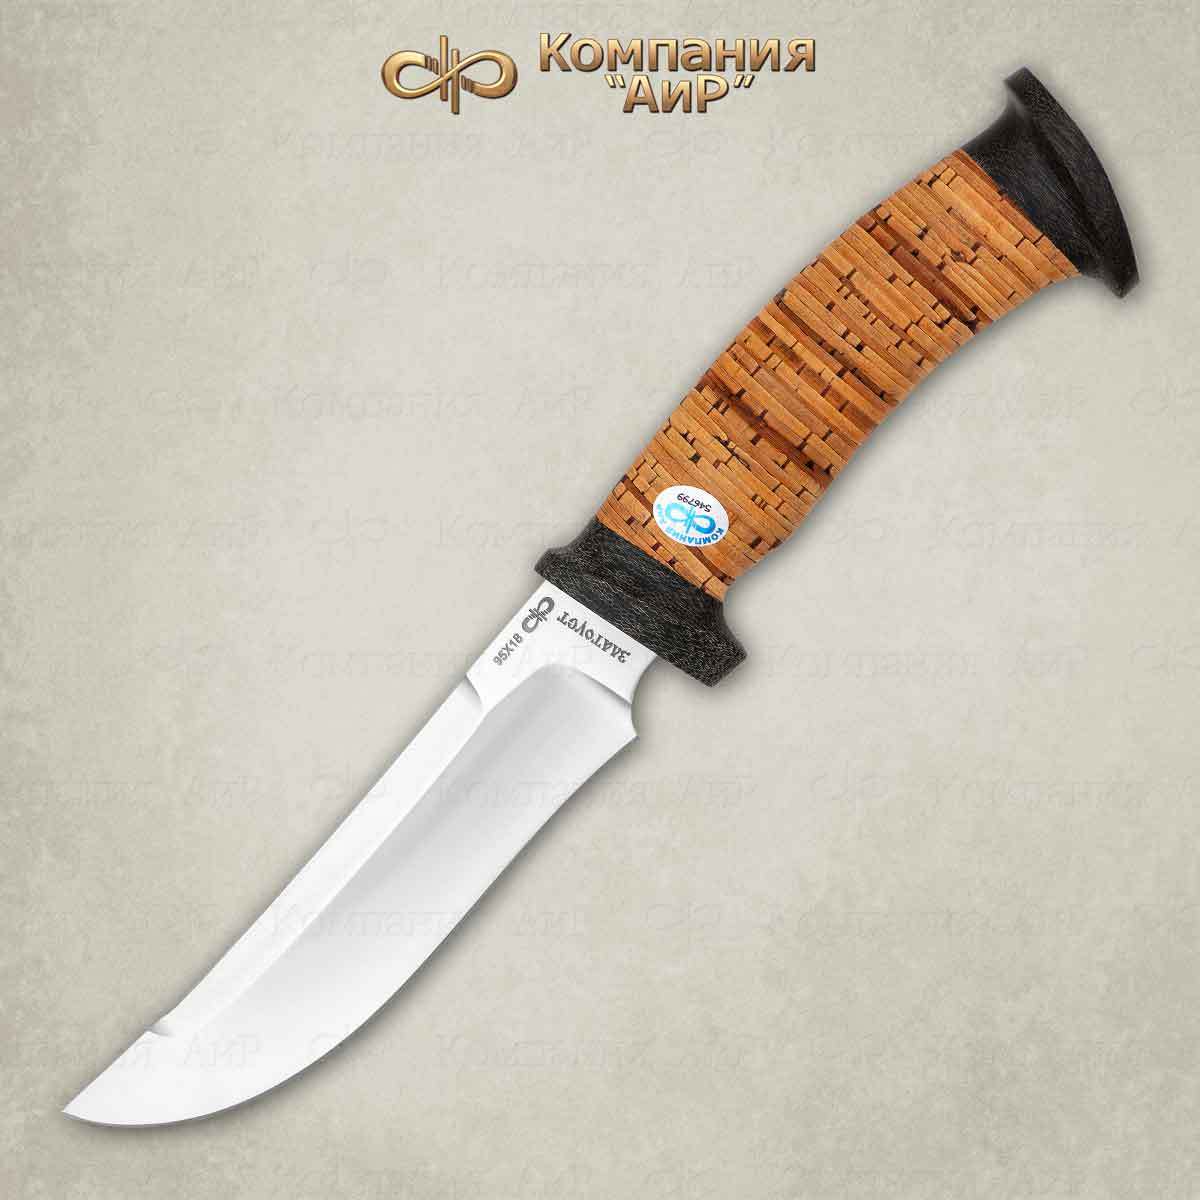 Нож разделочный "Росомаха" береста, АиР от Ножиков